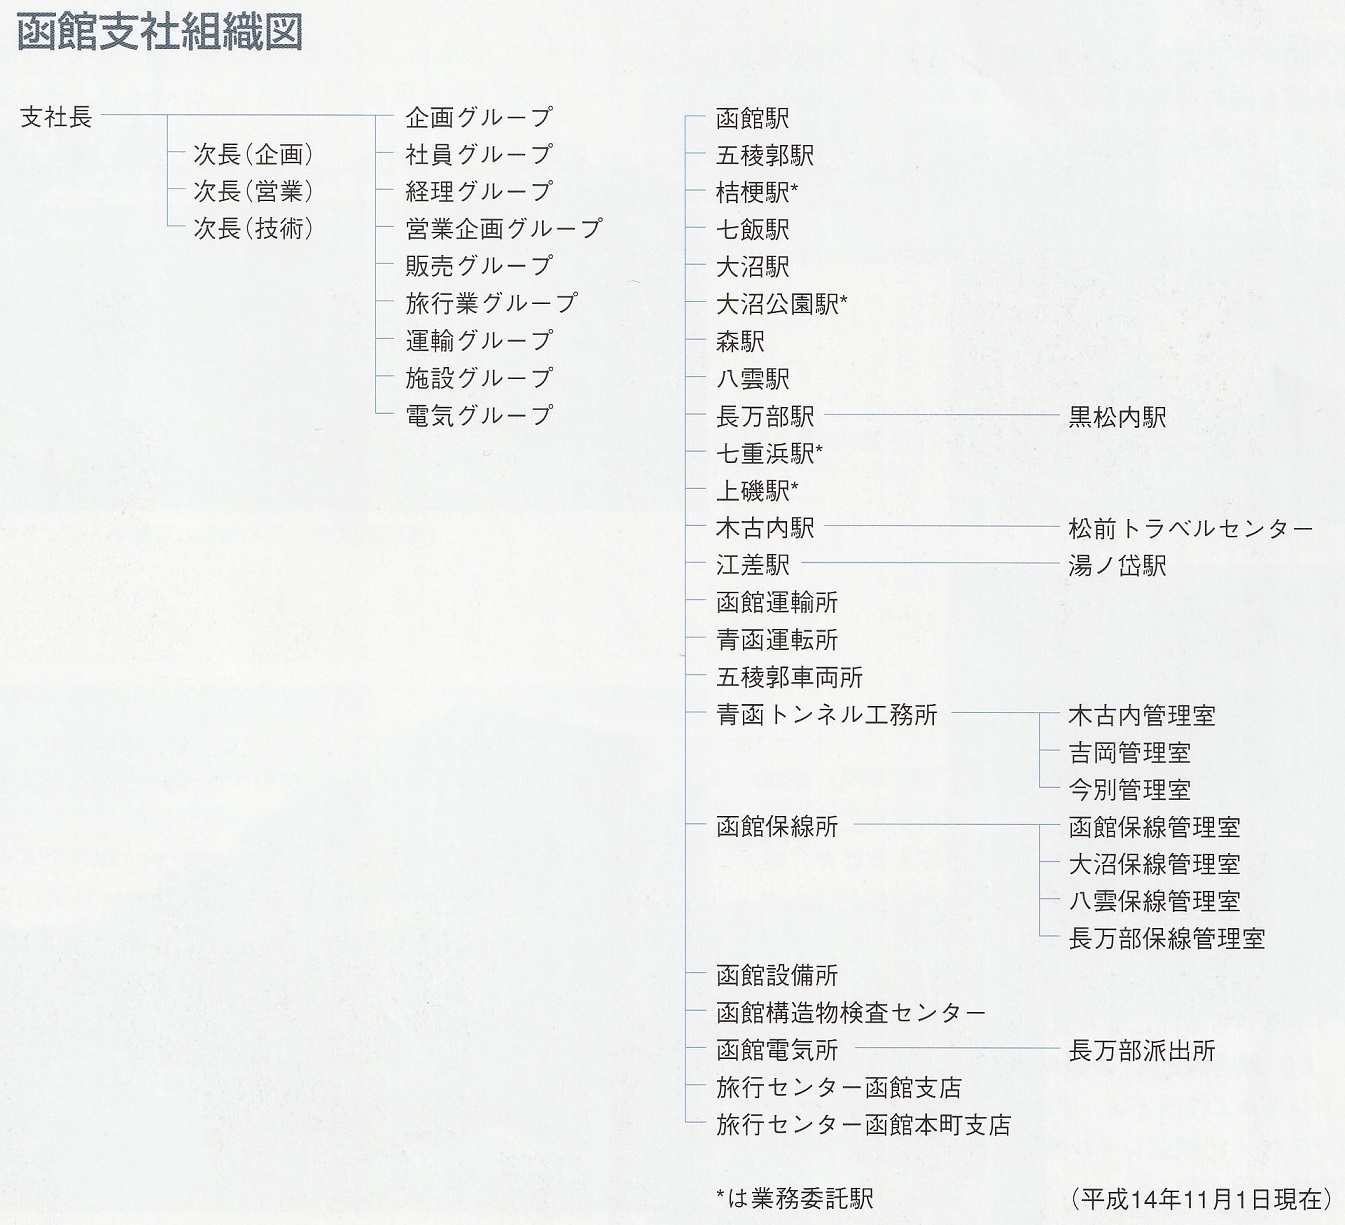 JR北海道函館支社組織図(2002年)a01